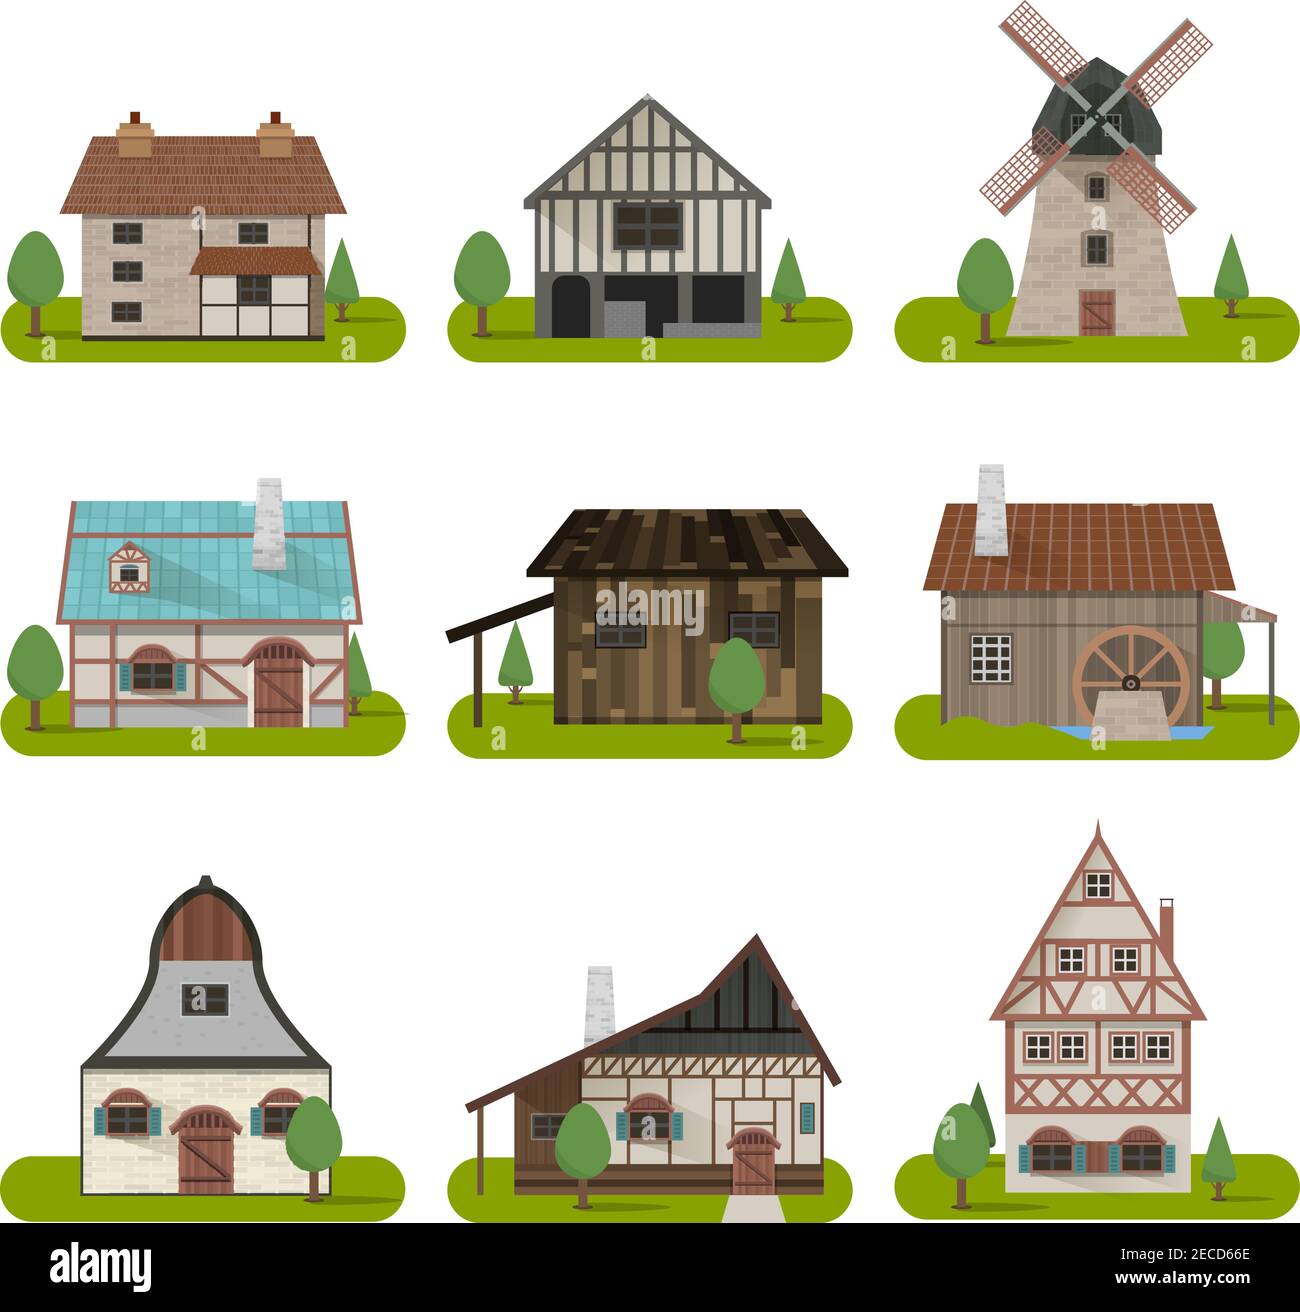 Antichi edifici medievali con diversi tipi di case tradizionali illustrazione vettoriale isolata Illustrazione Vettoriale